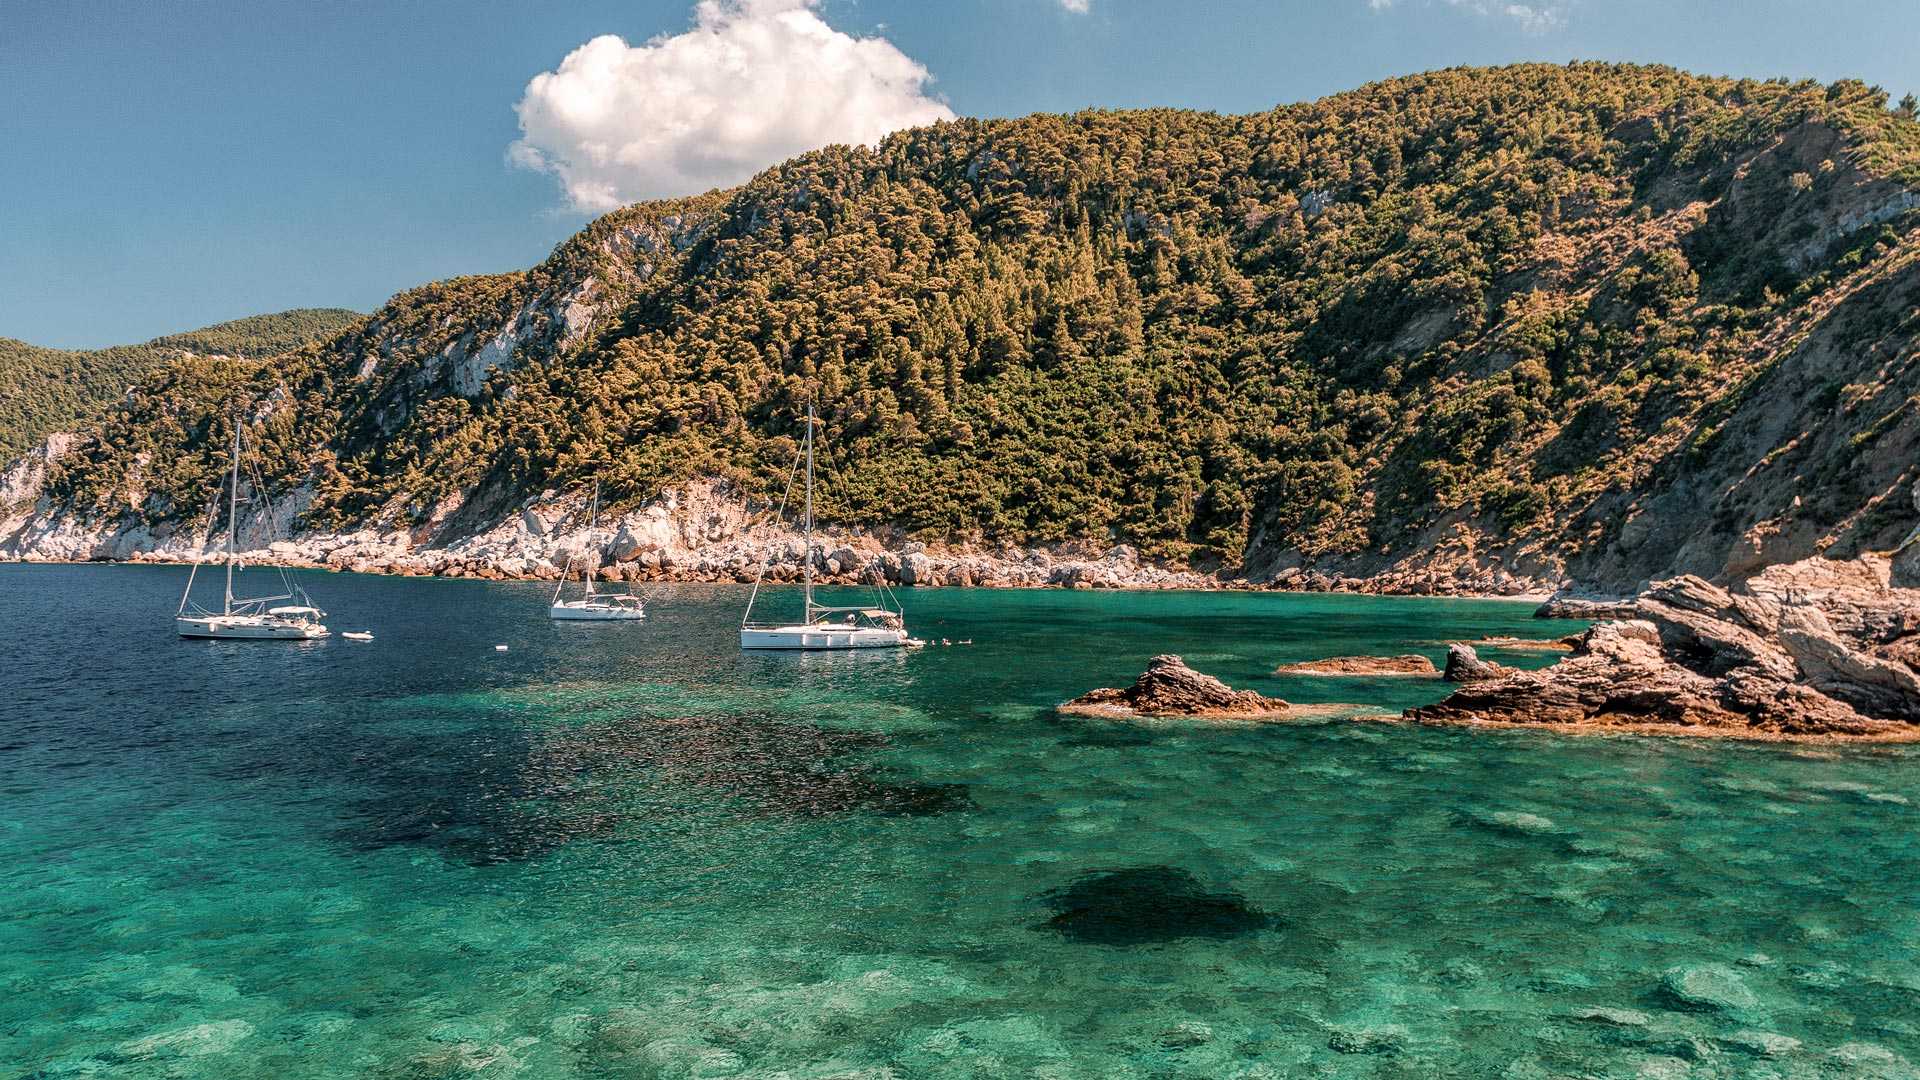 Санторини (греция) - все о острове, фото, достопримечательности, пляжи